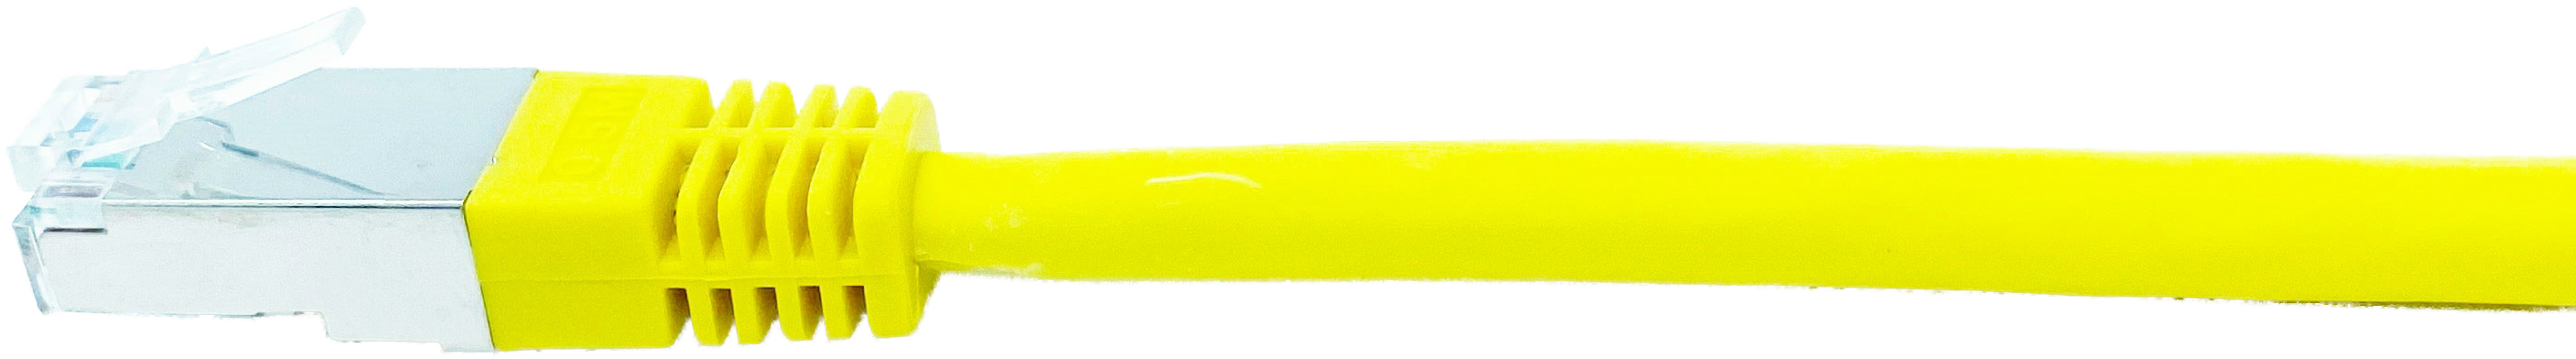 Kupferpatchkabel Cat.6 250MHz 2,0m gelb